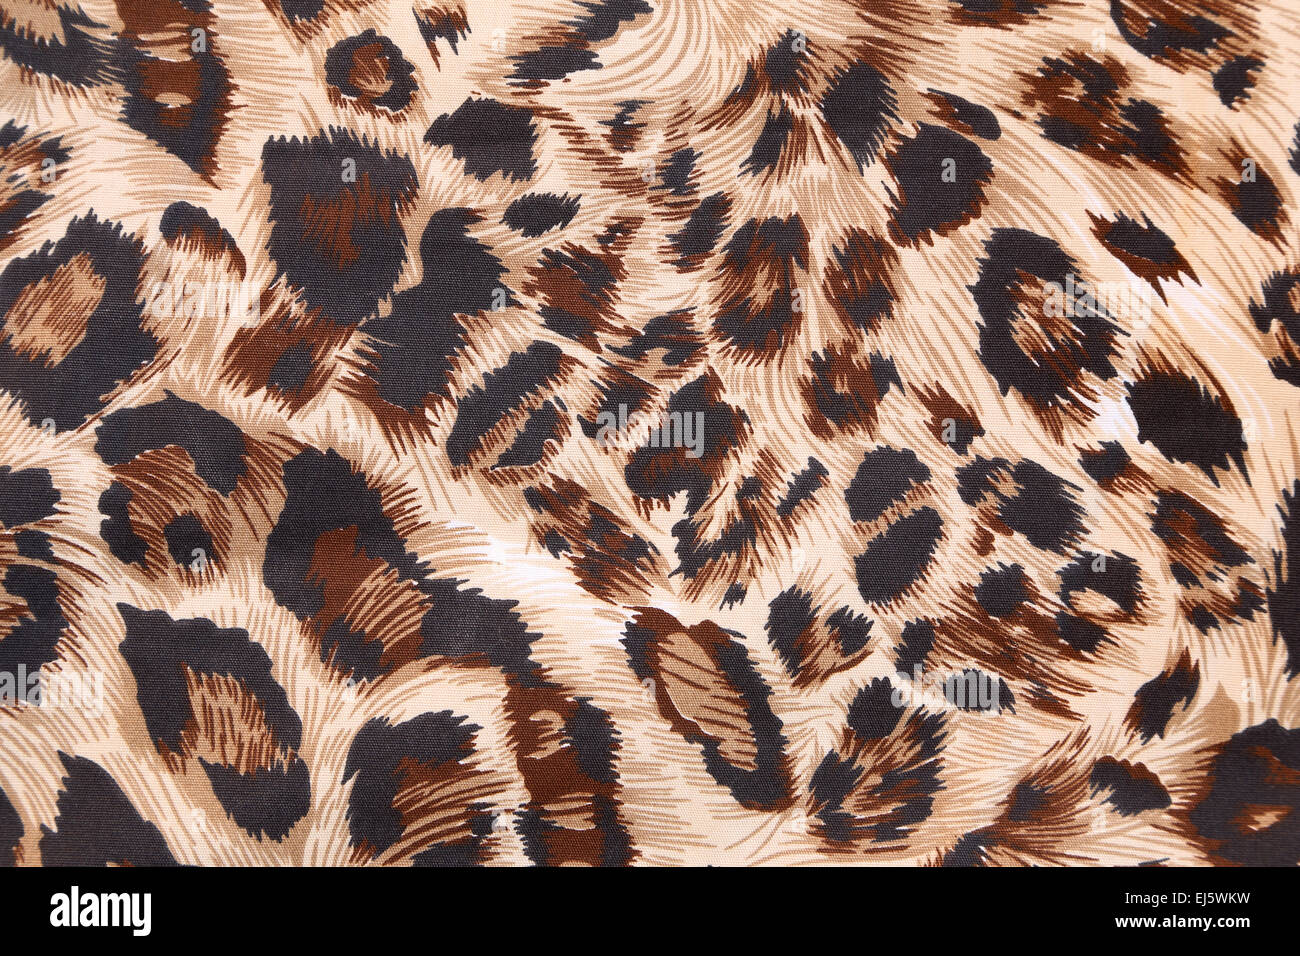 Zusammenfassung Hintergrund mit Leopard Textur Stockfoto